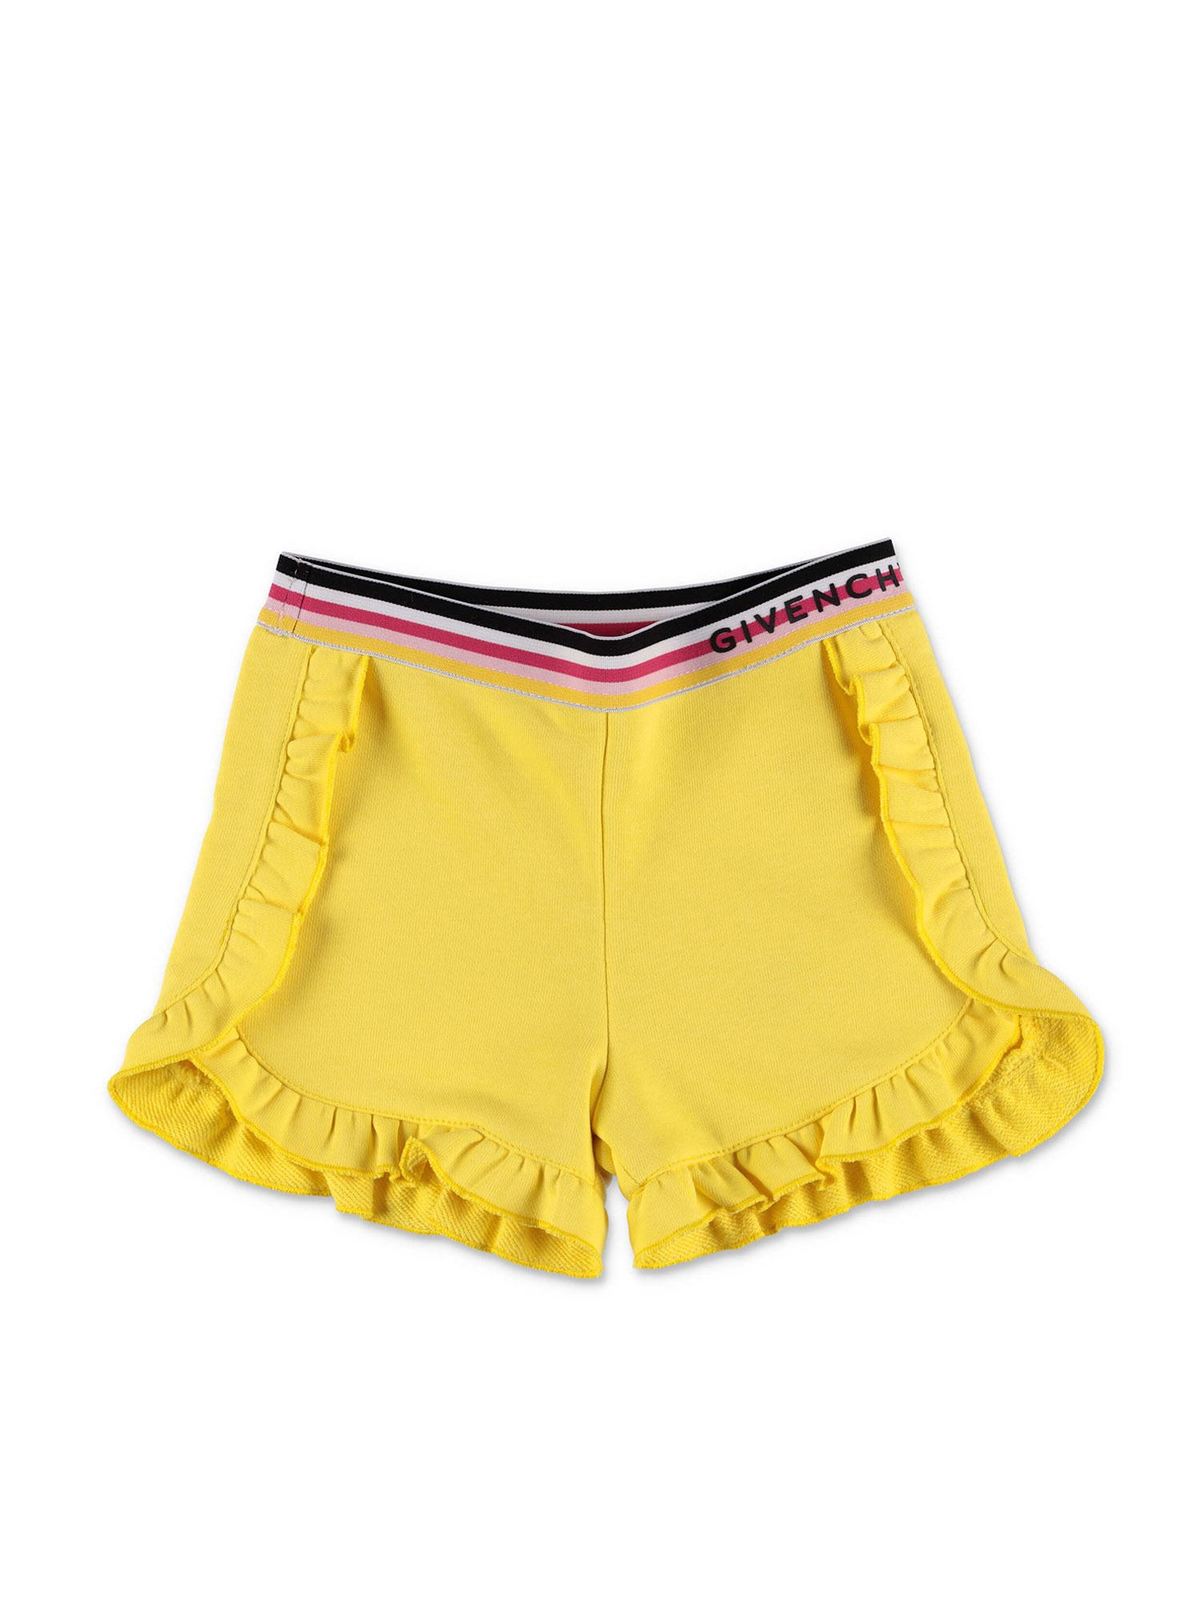 Givenchy - Yellow logo shorts - shorts 